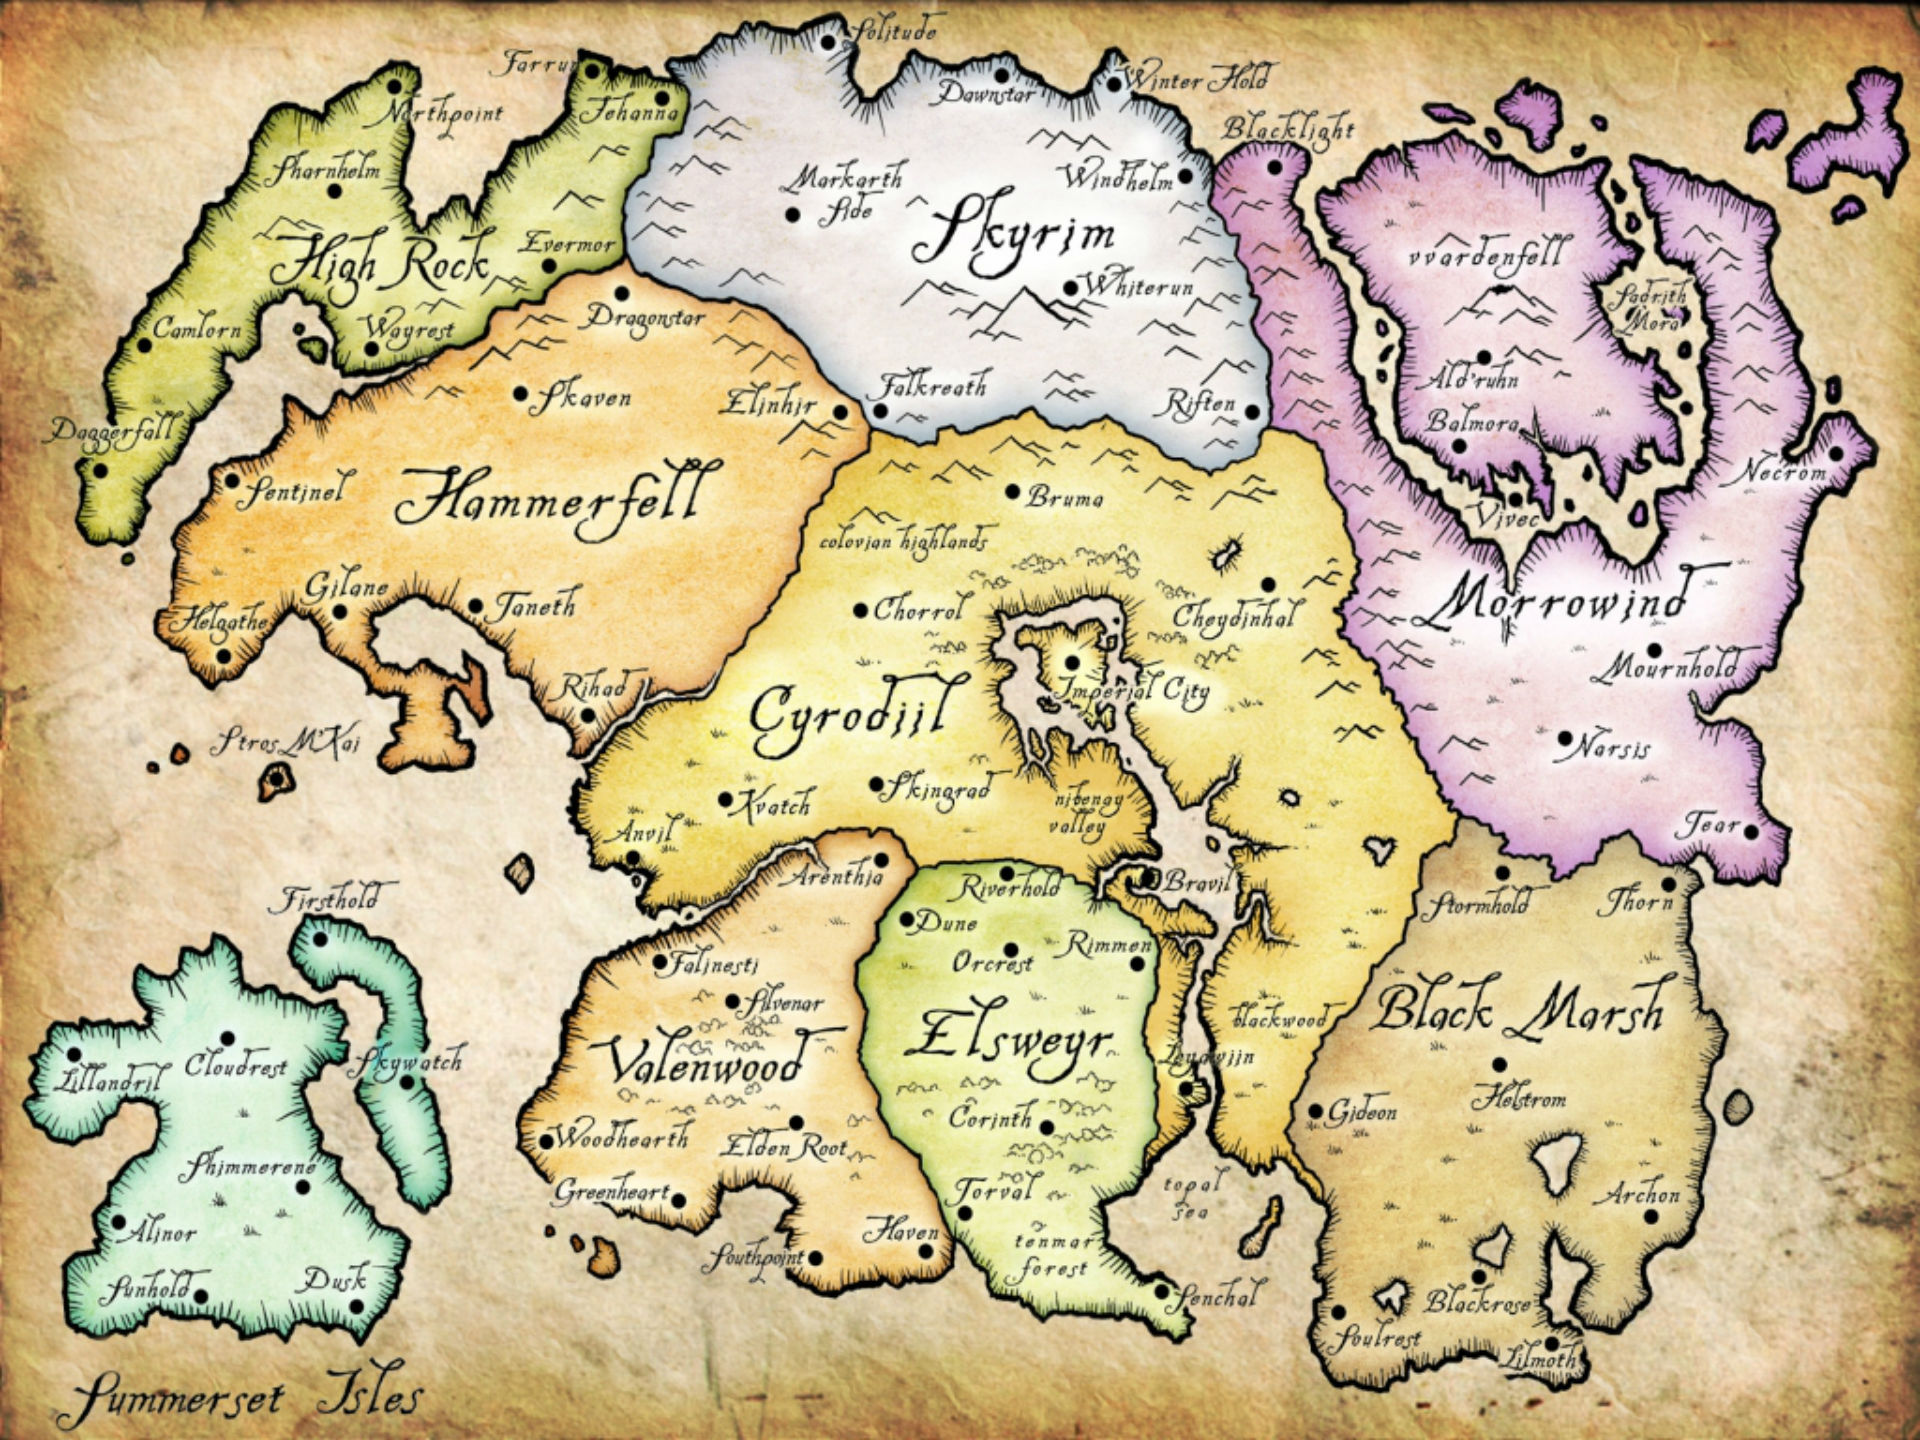 The Elder Scrolls 6 Çıkış Tarihi Spekülasyonu ve Söylentileri: Tamriel'in 2D haritasının bir çekimi ve tüm bölgeleri